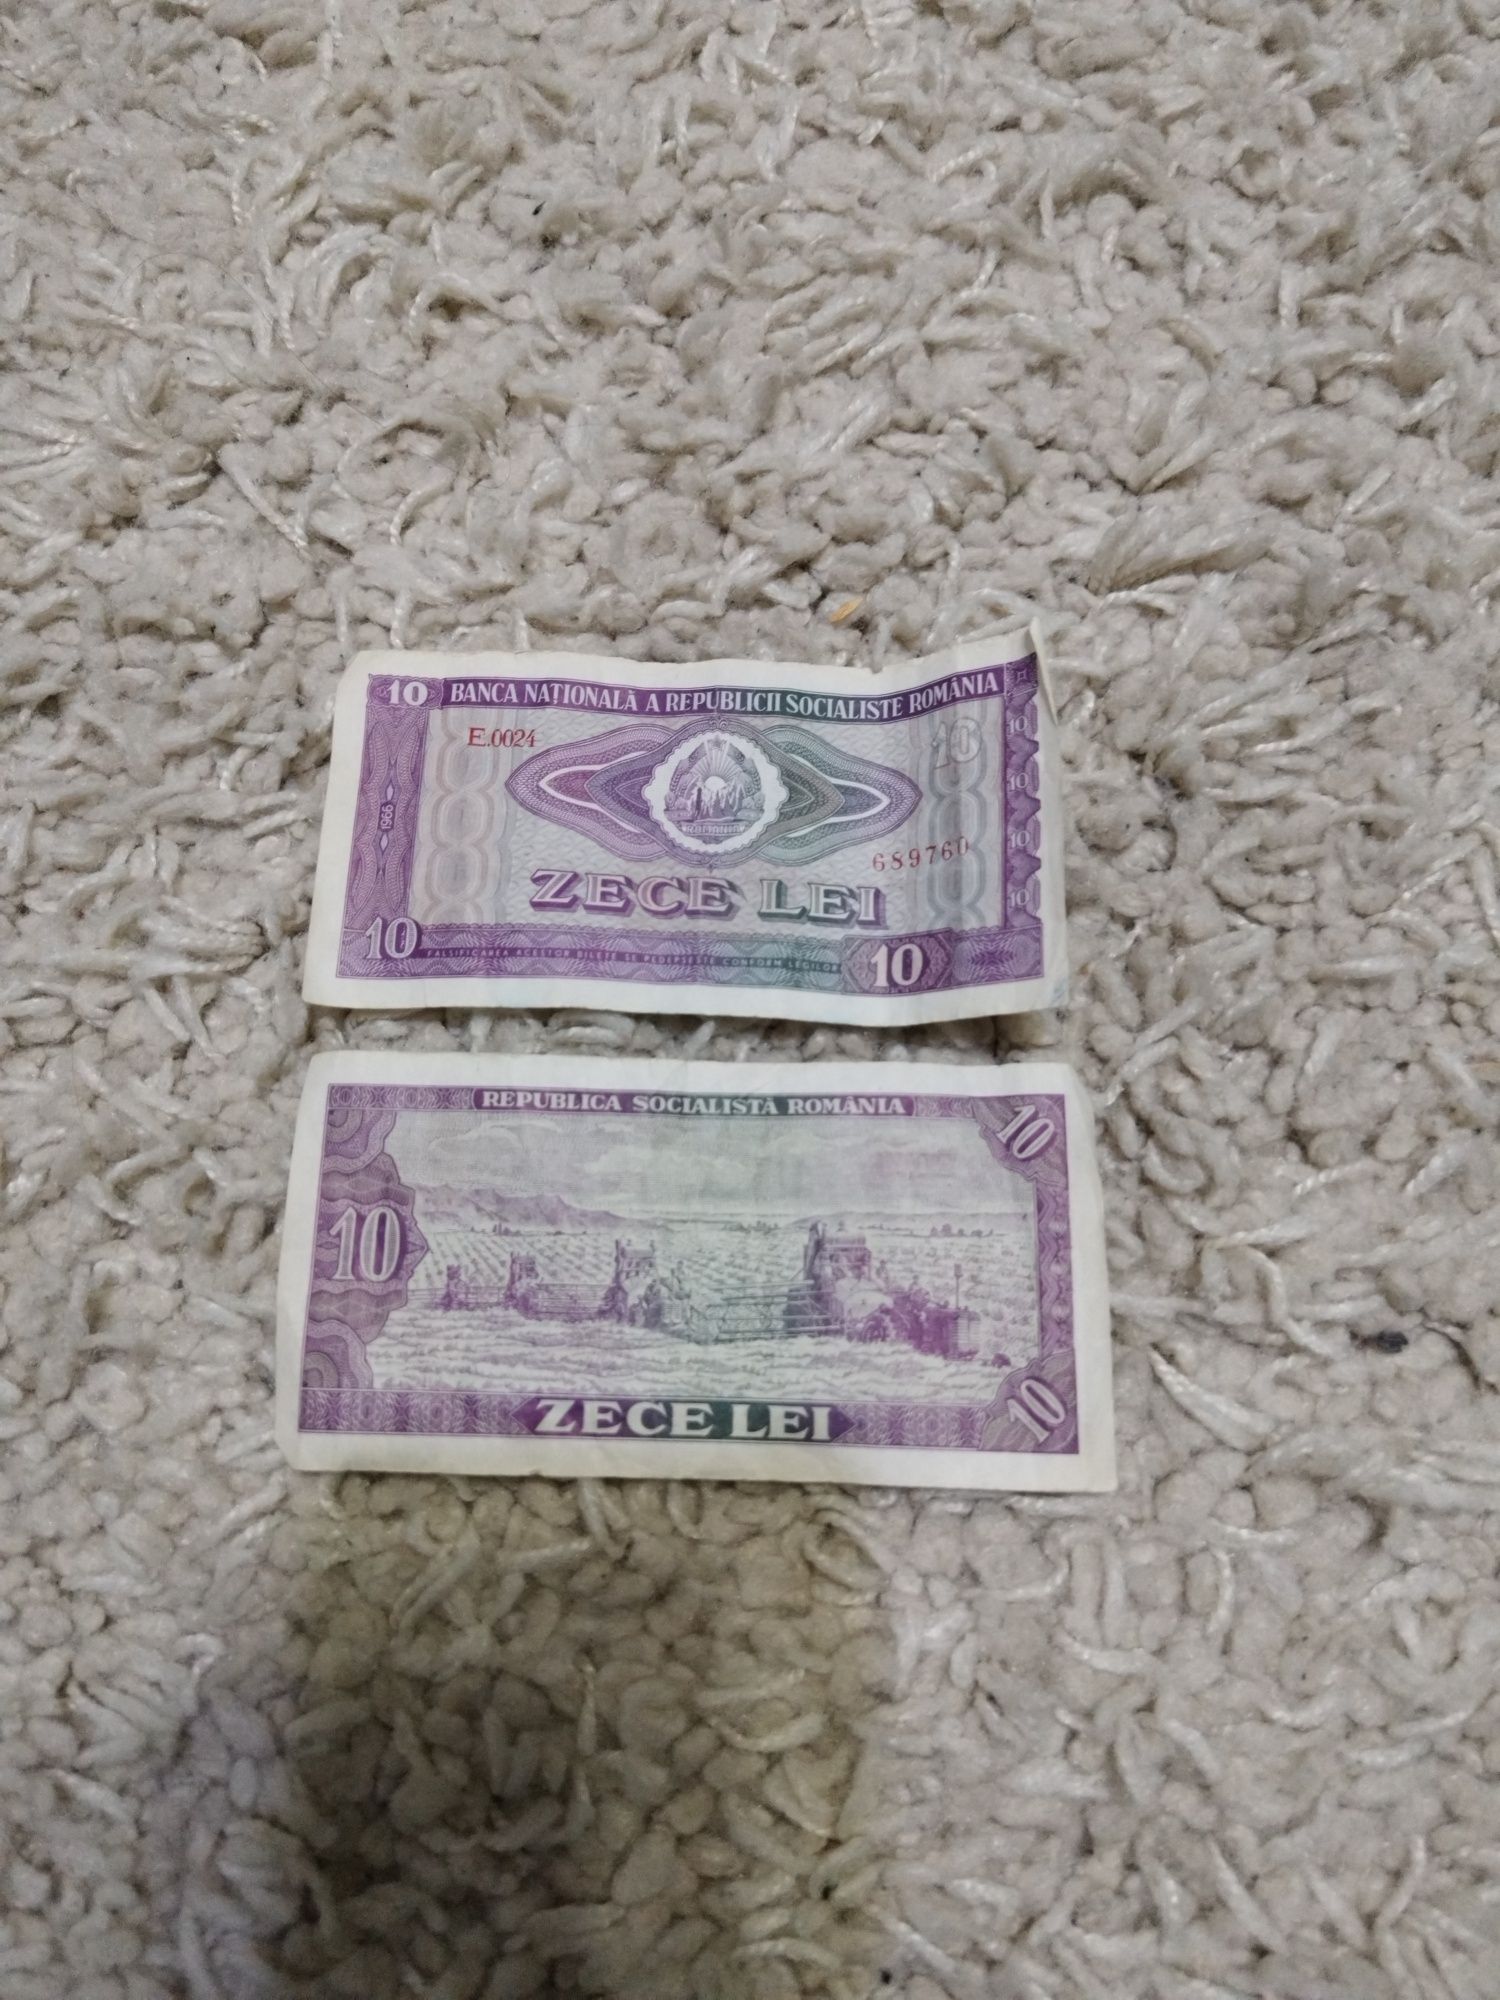 Vândut doua bancnote de zece lei din 1966